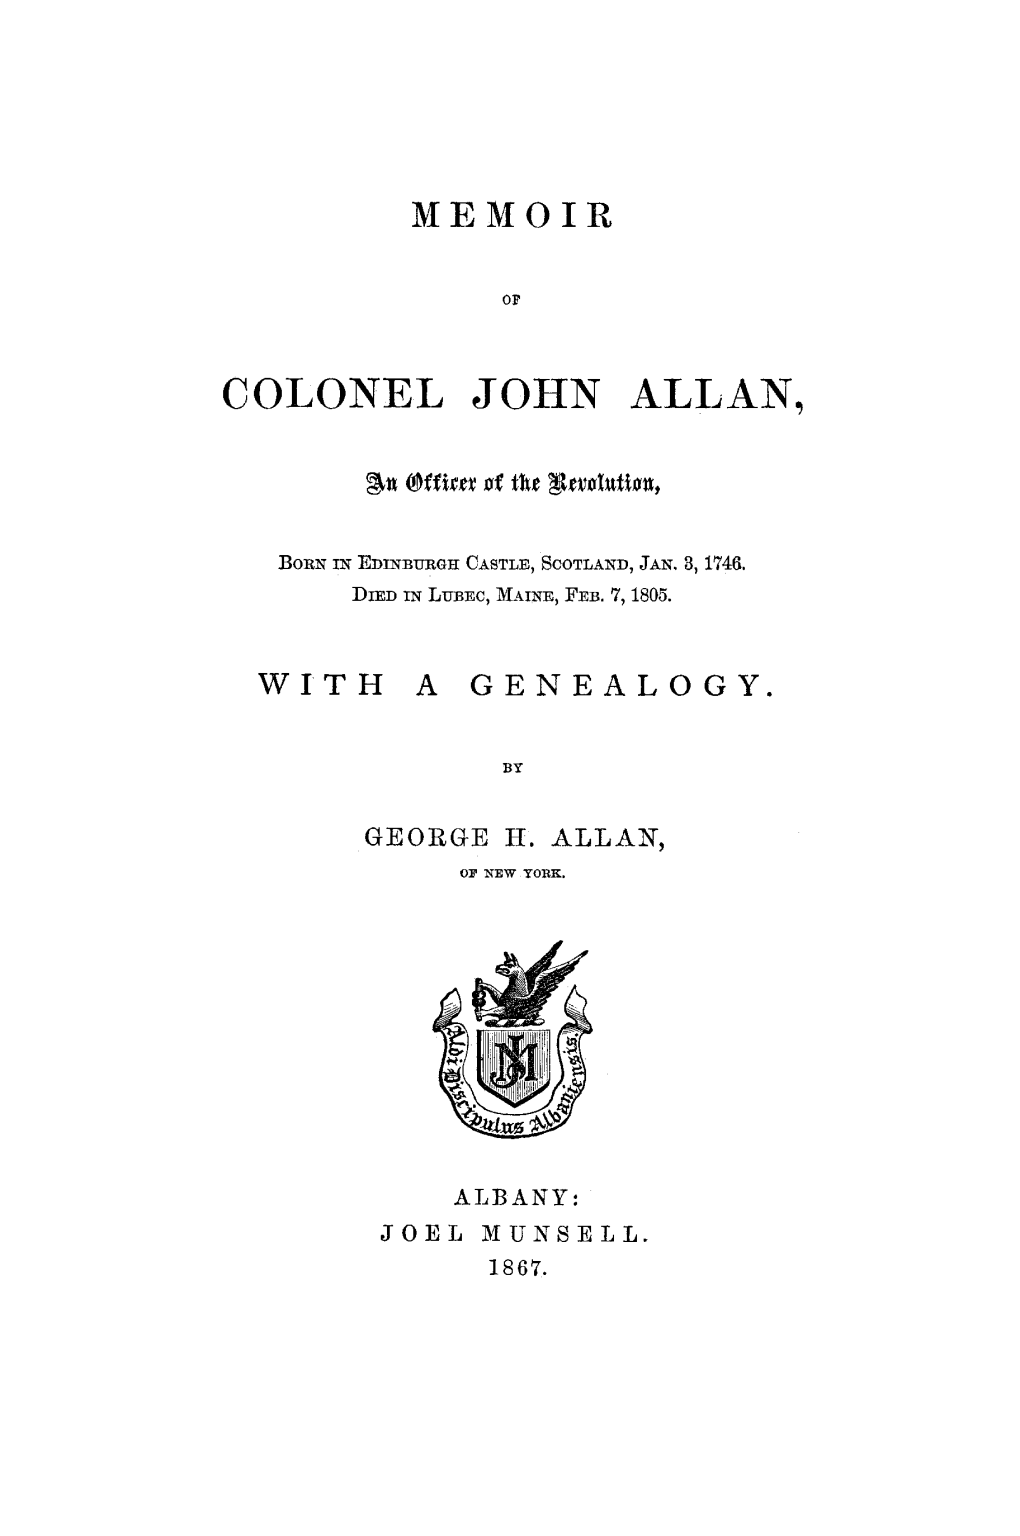 Colonel John Allan